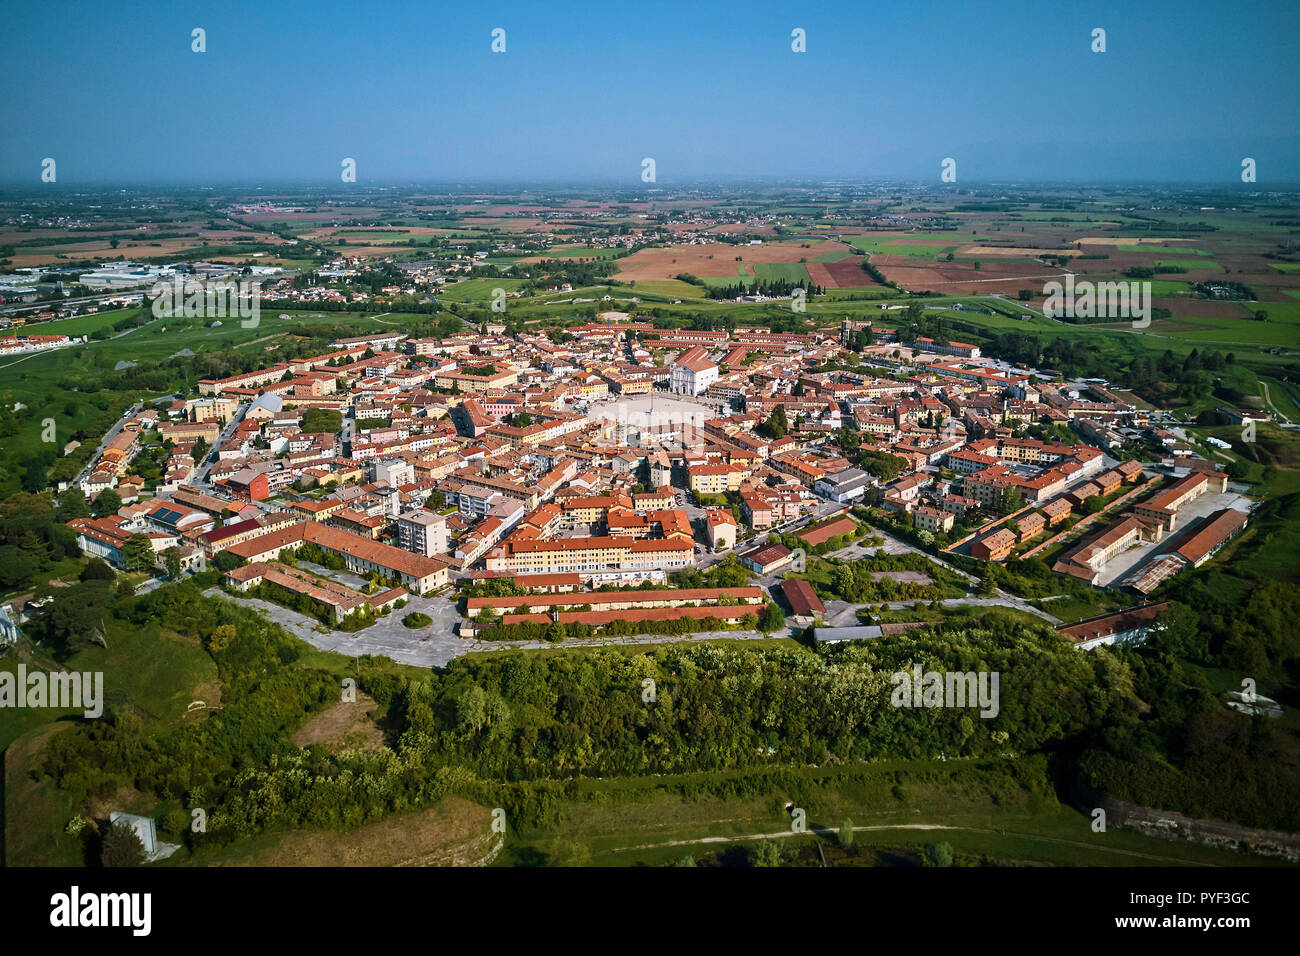 L'Italie, Frioul-Vénétie Julienne, Palmanova, patrimoine mondial de l'UNESCO, vue aérienne Banque D'Images